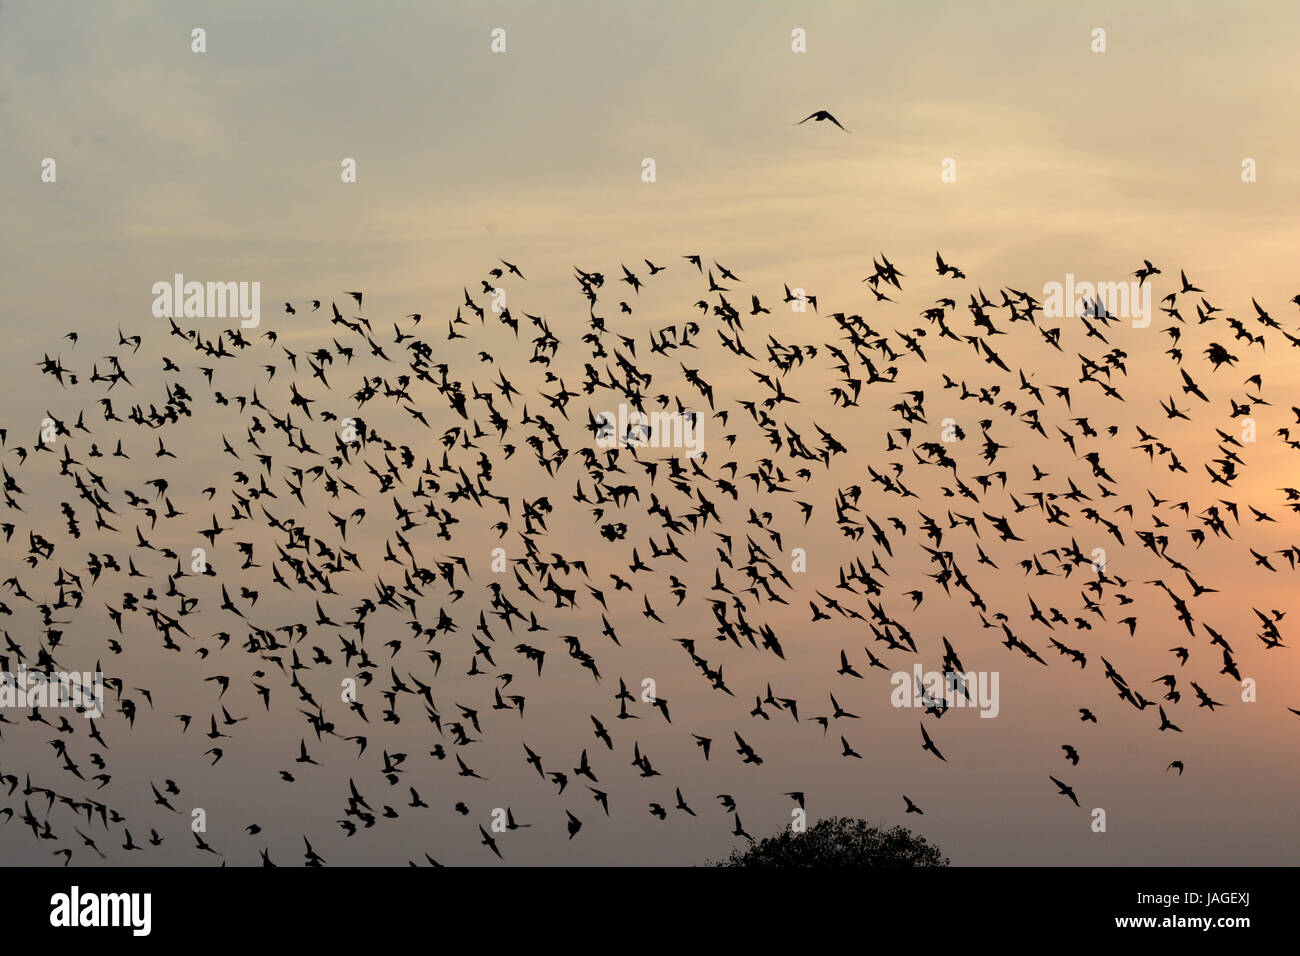 Beflockung Verhalten IN BIRDSreserved Stockfoto